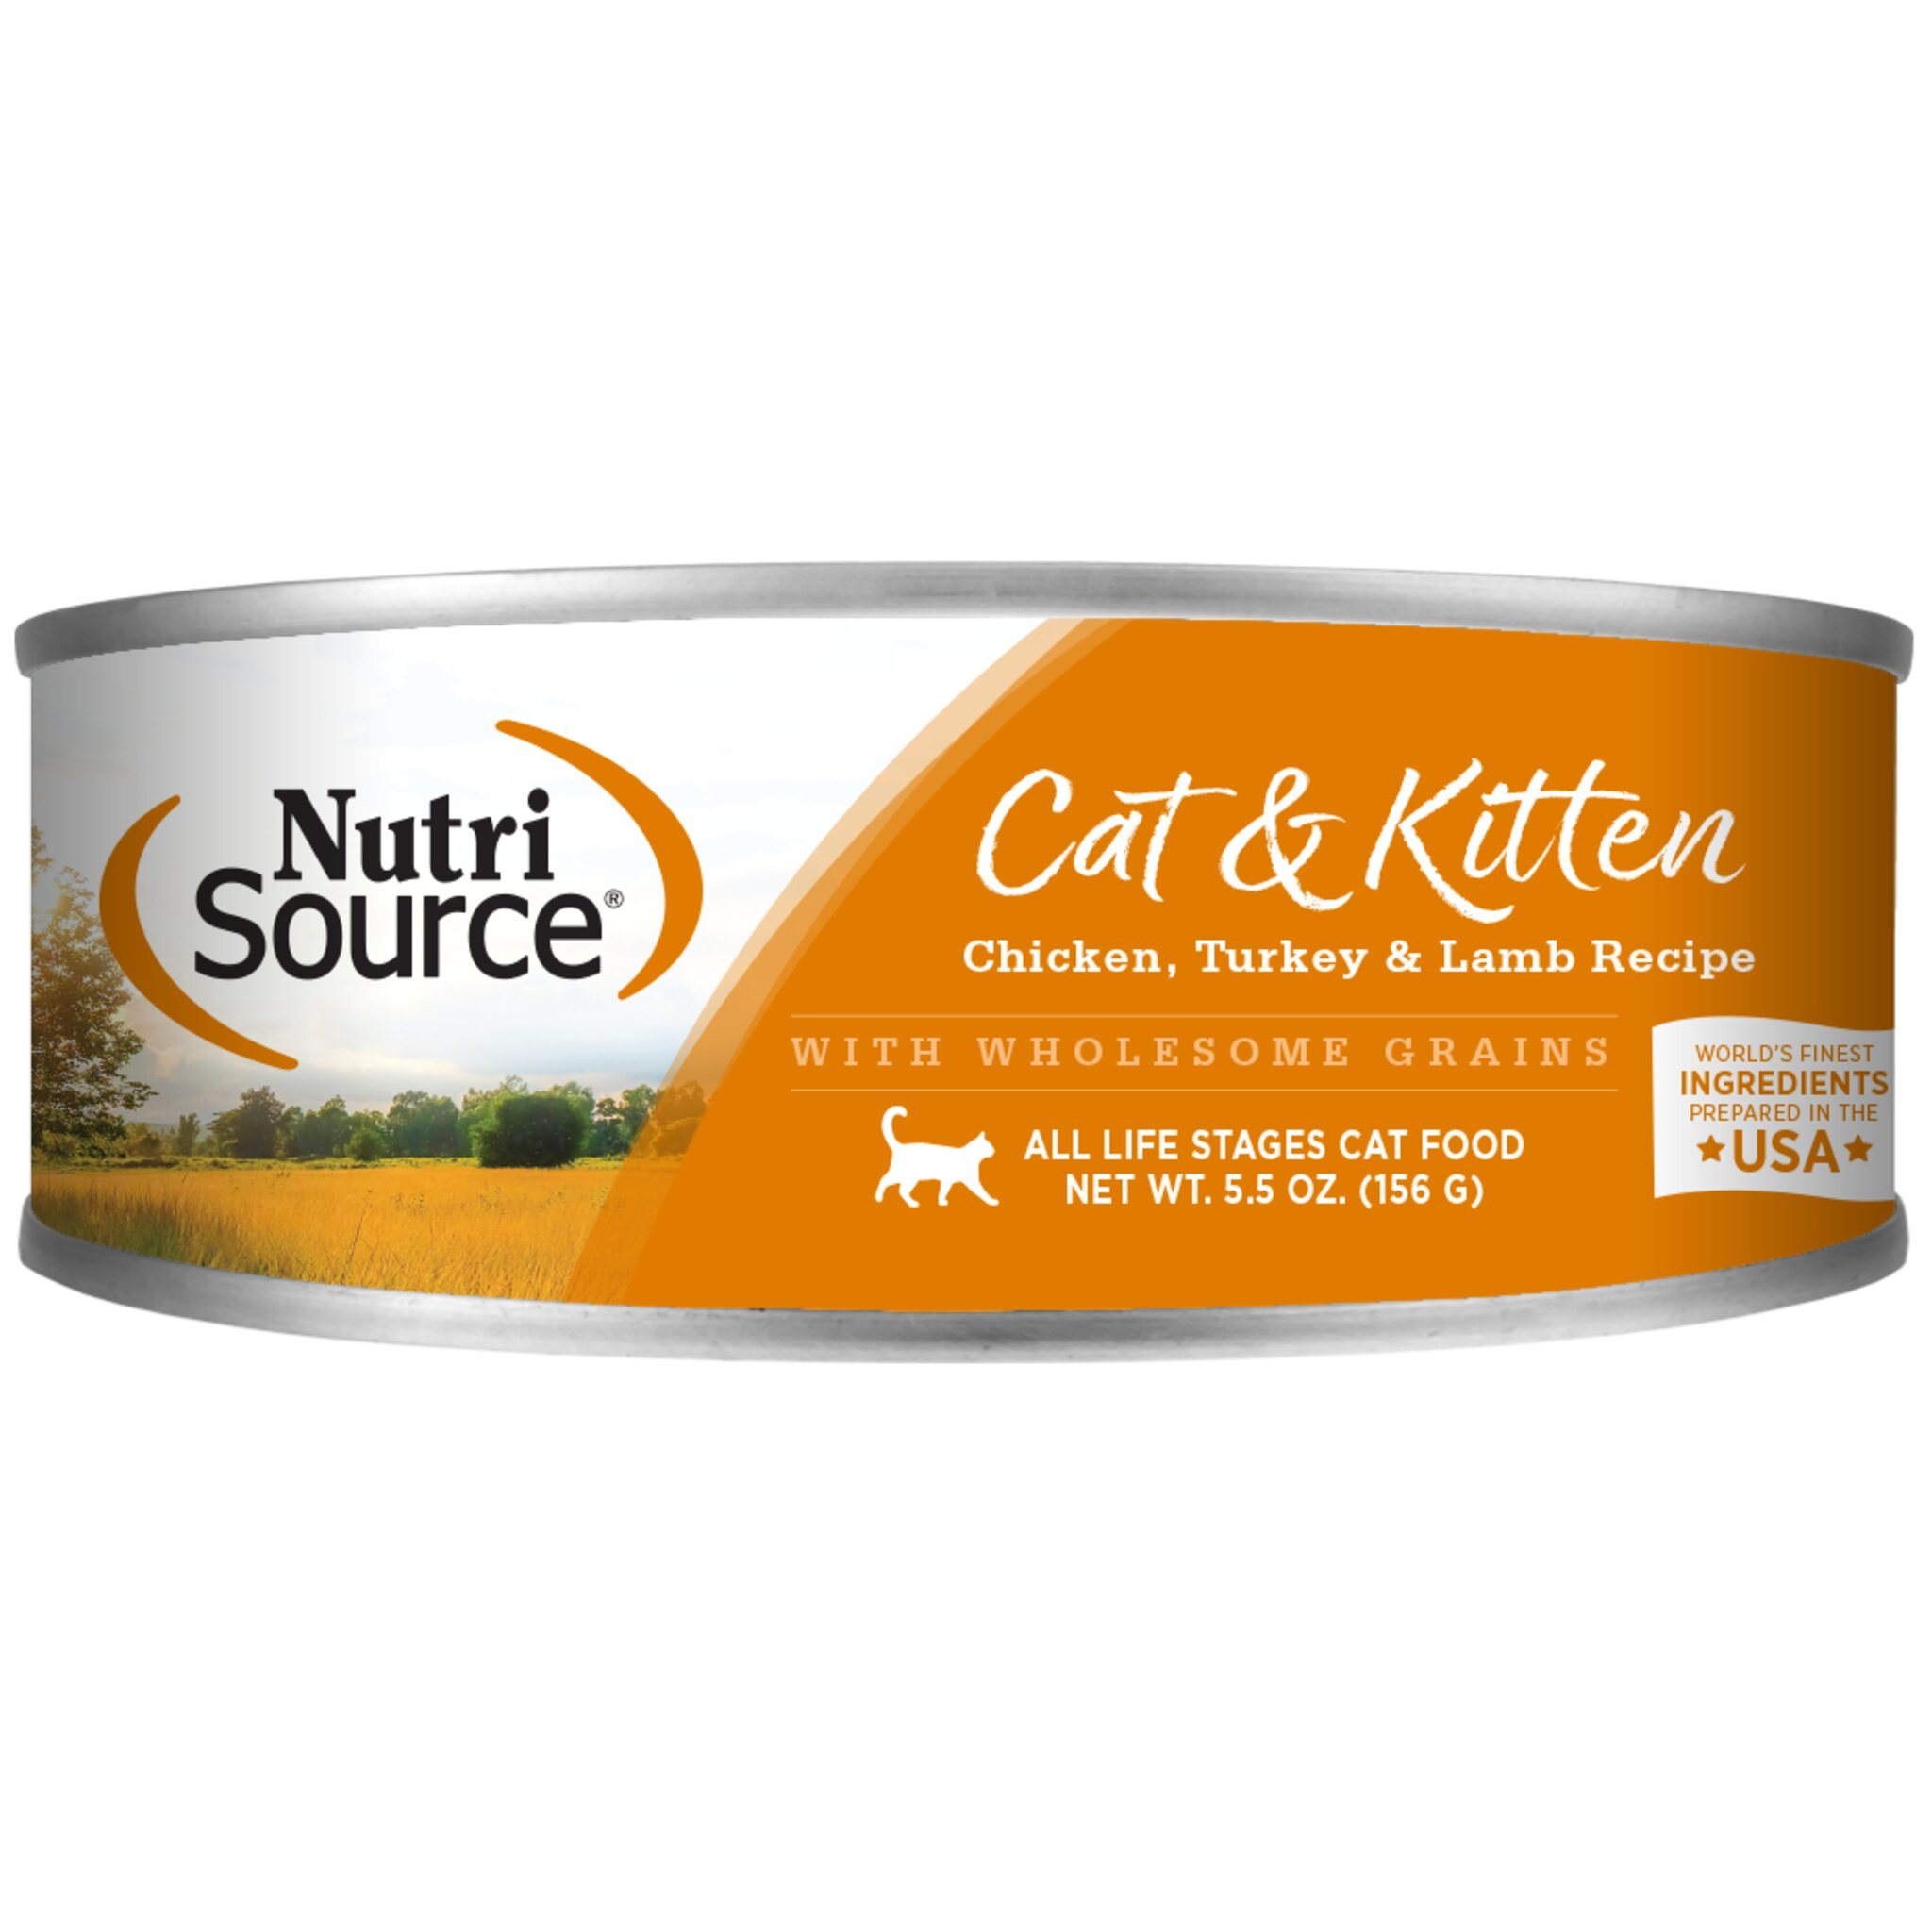 NutriSource Chicken, Turkey, & Lamb Wet Cat & Kitten Food  5.5 oz